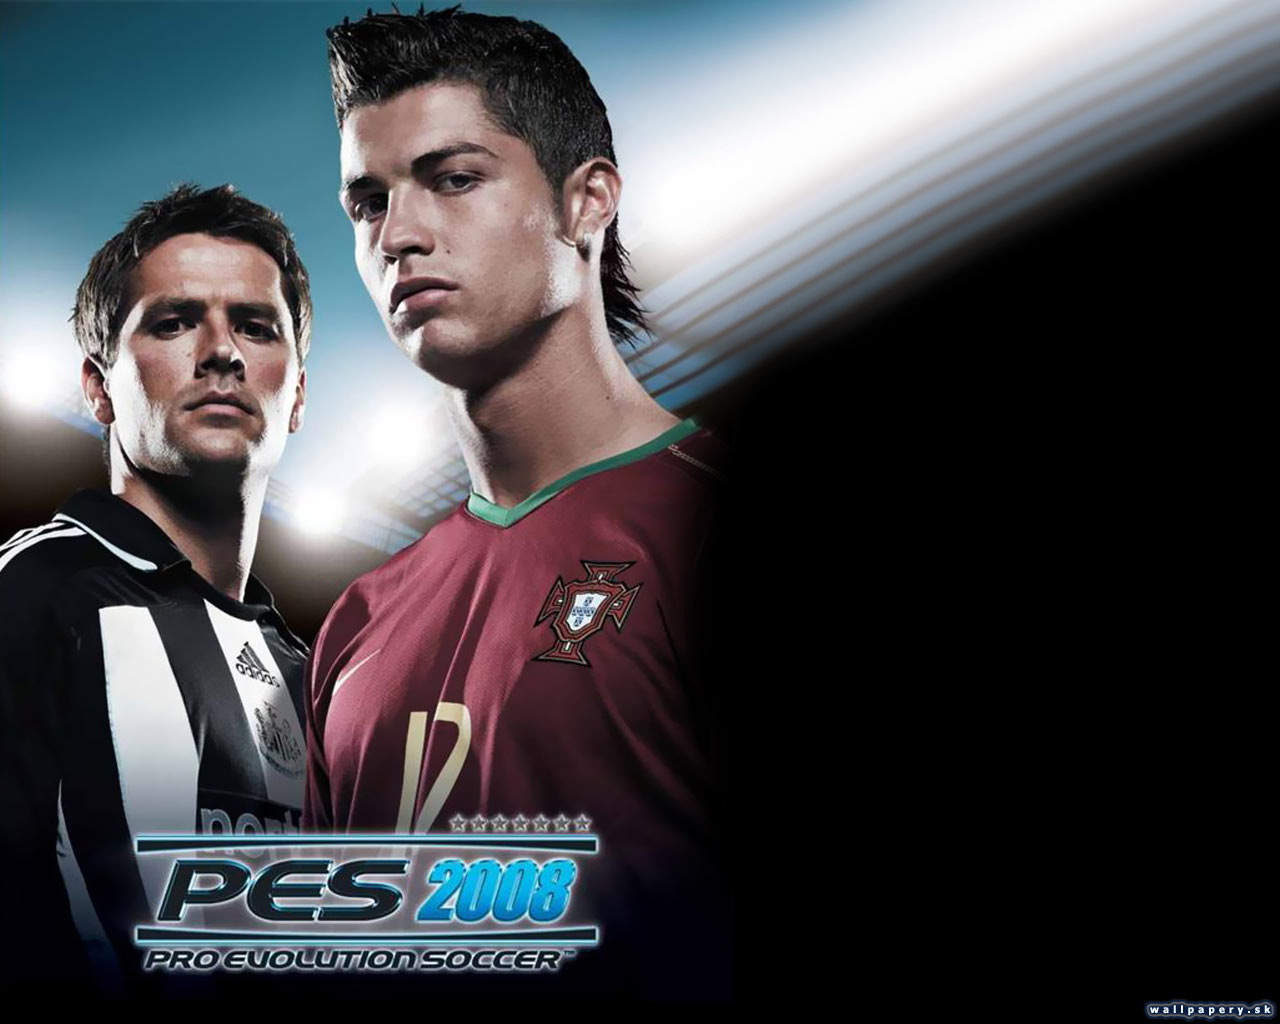 Pro Evolution Soccer 2008 - wallpaper 2